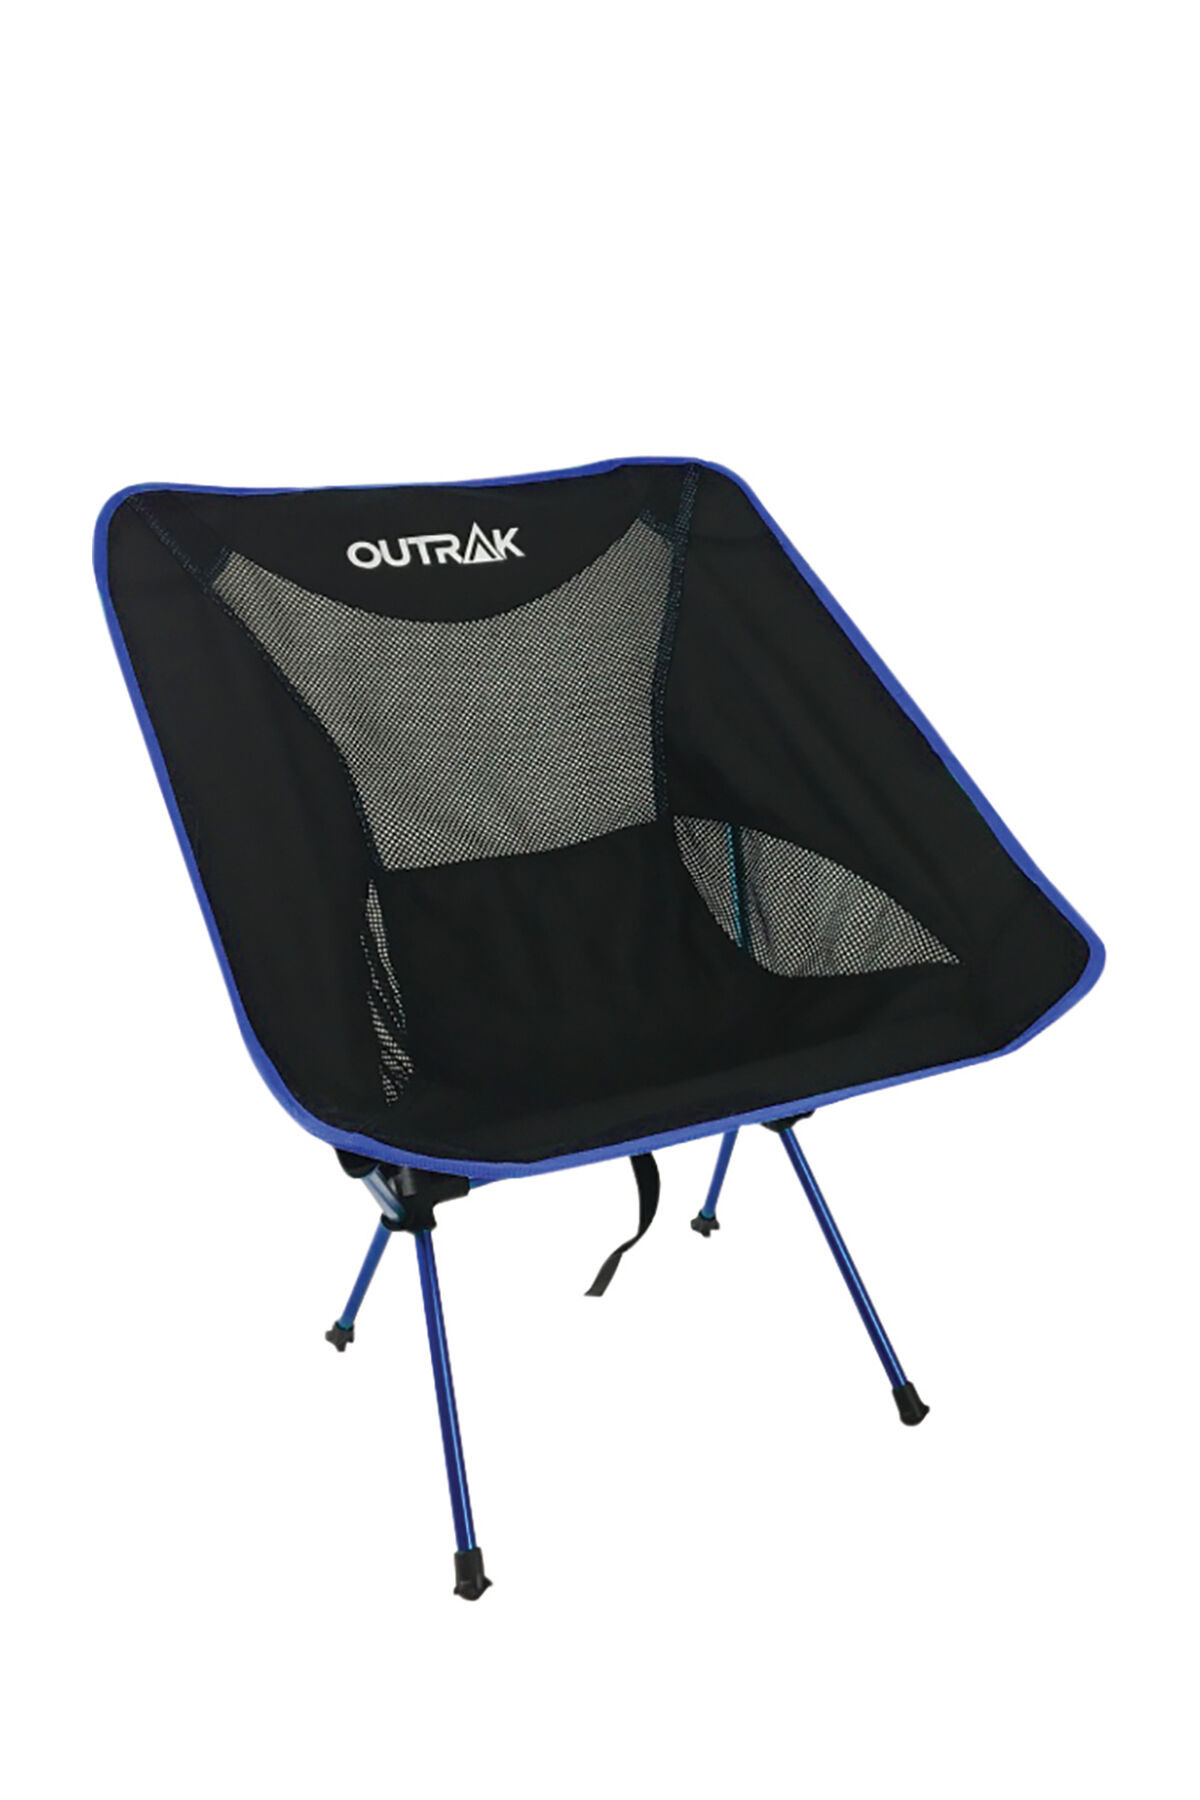 outrak hiking chair